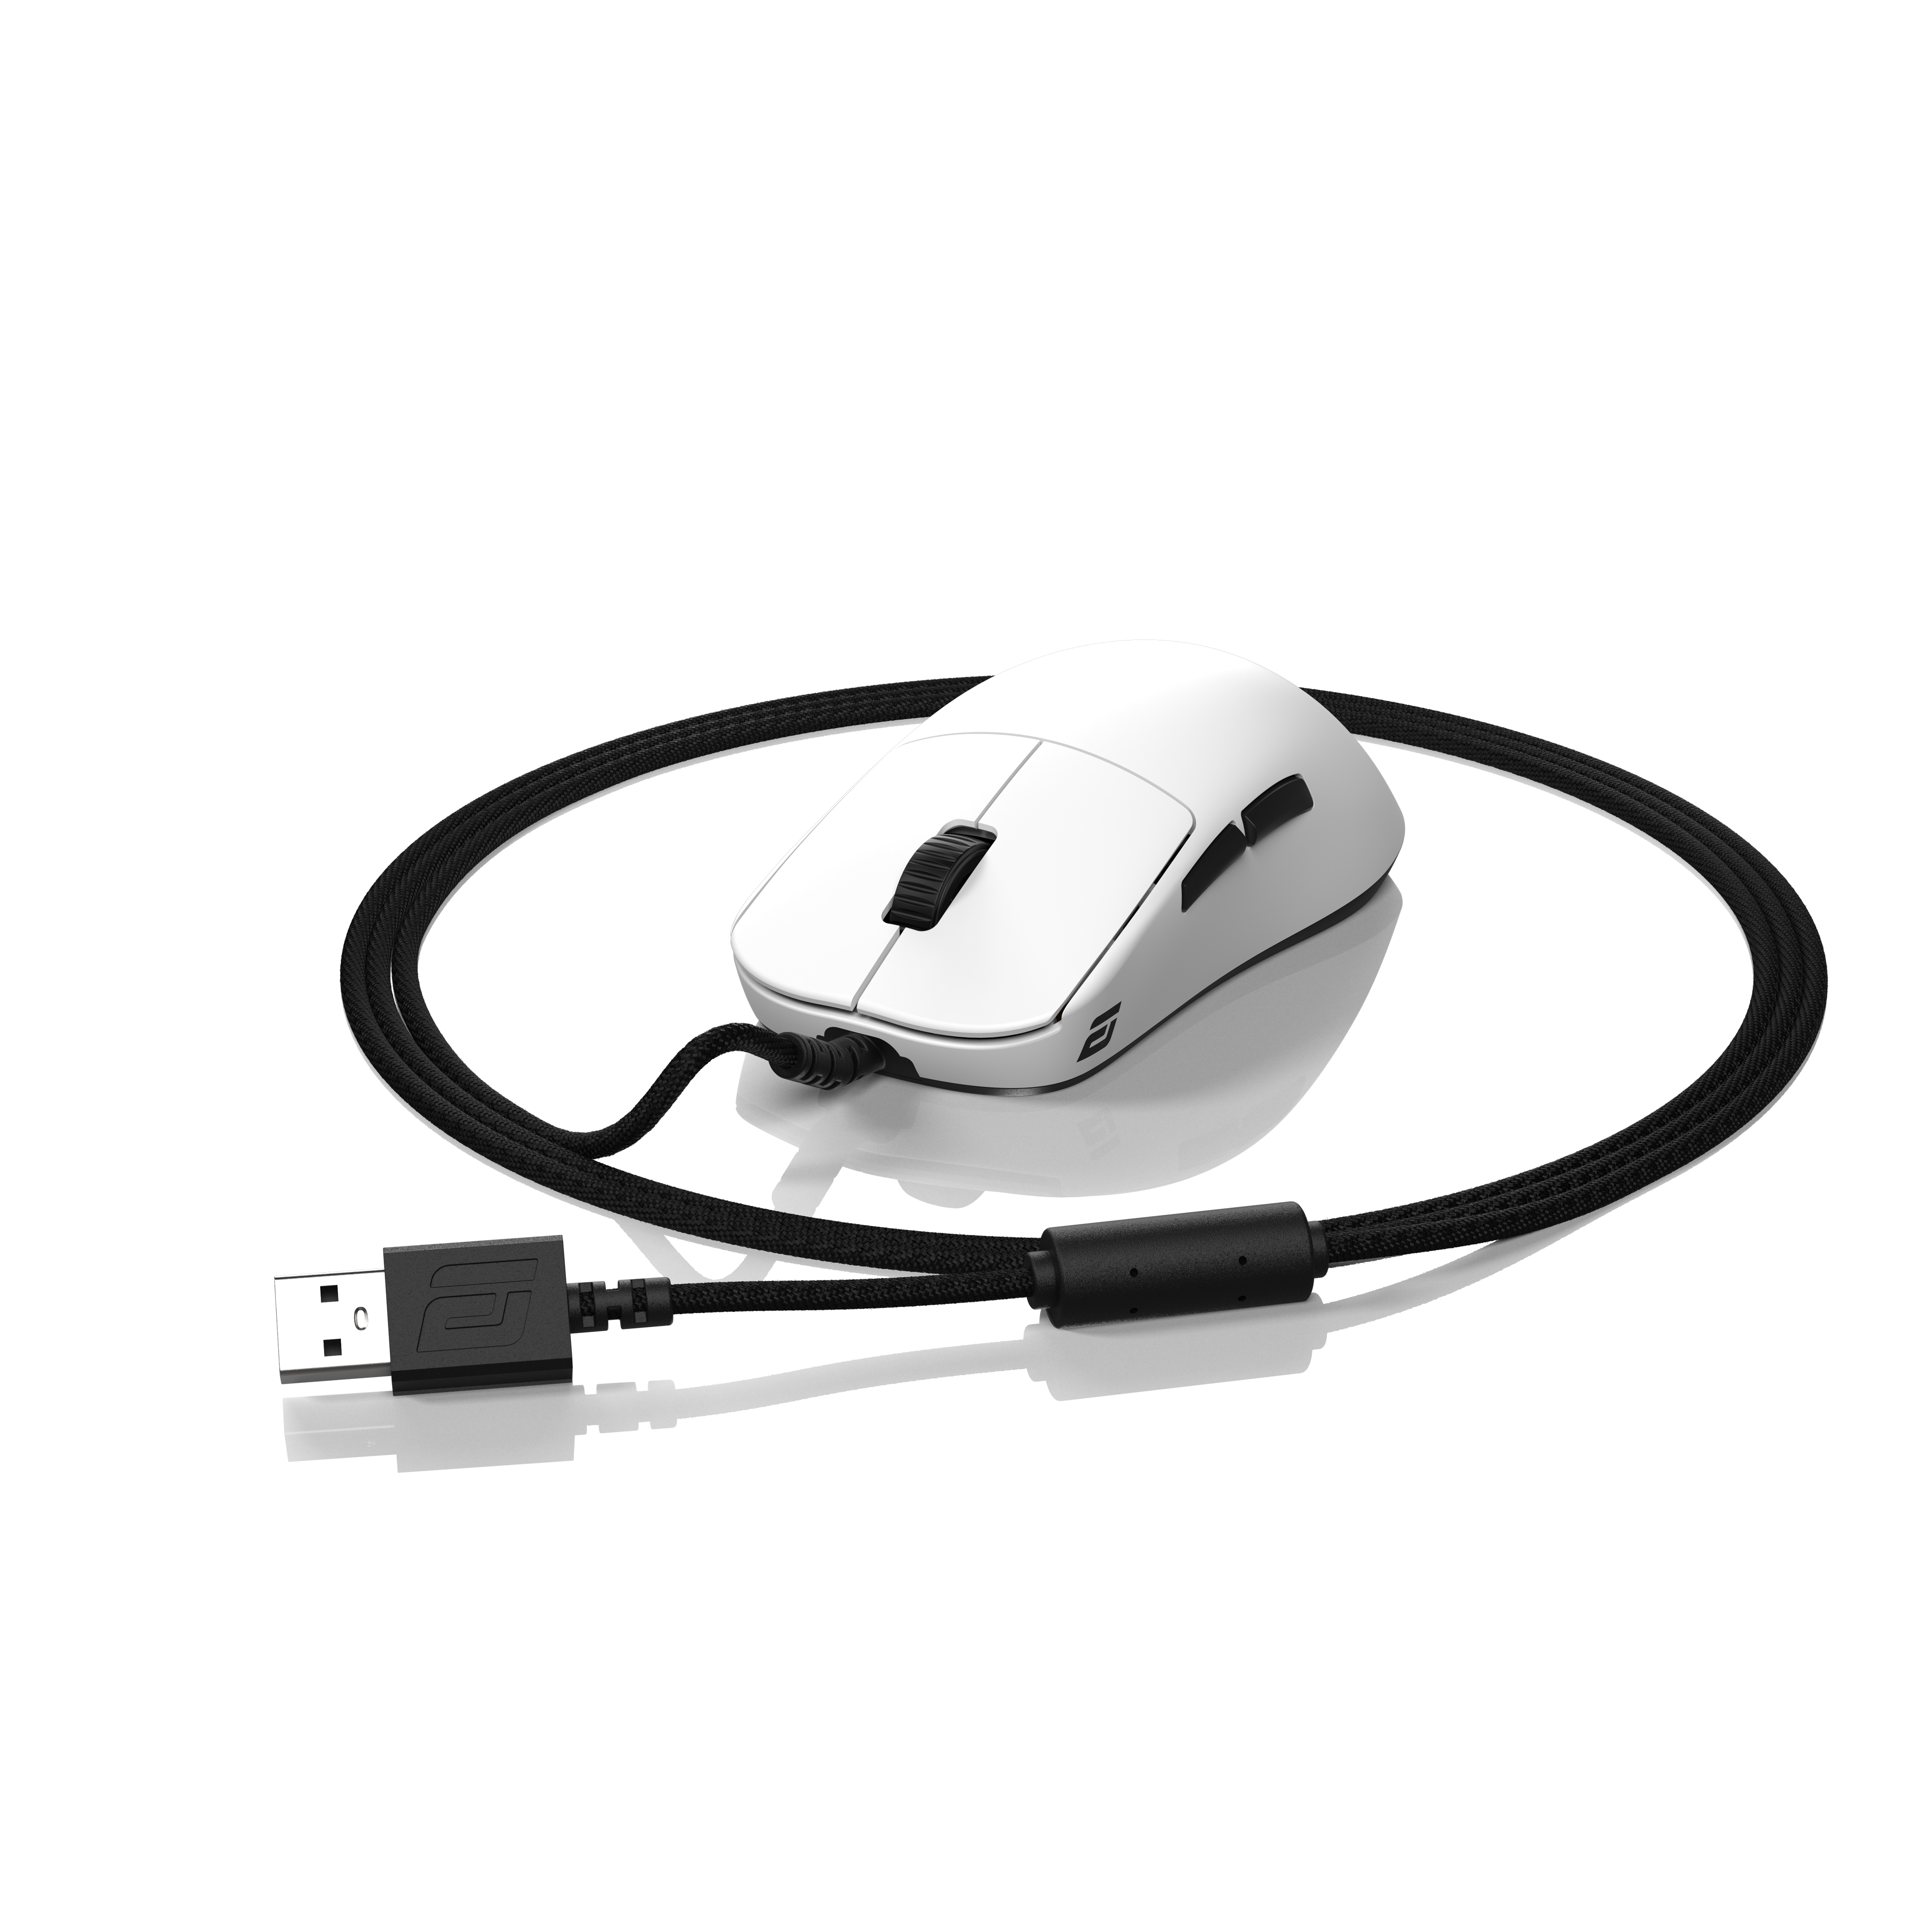 Endgame Gear OP1 8k Gaming Mouse - WhiteEndgameGear